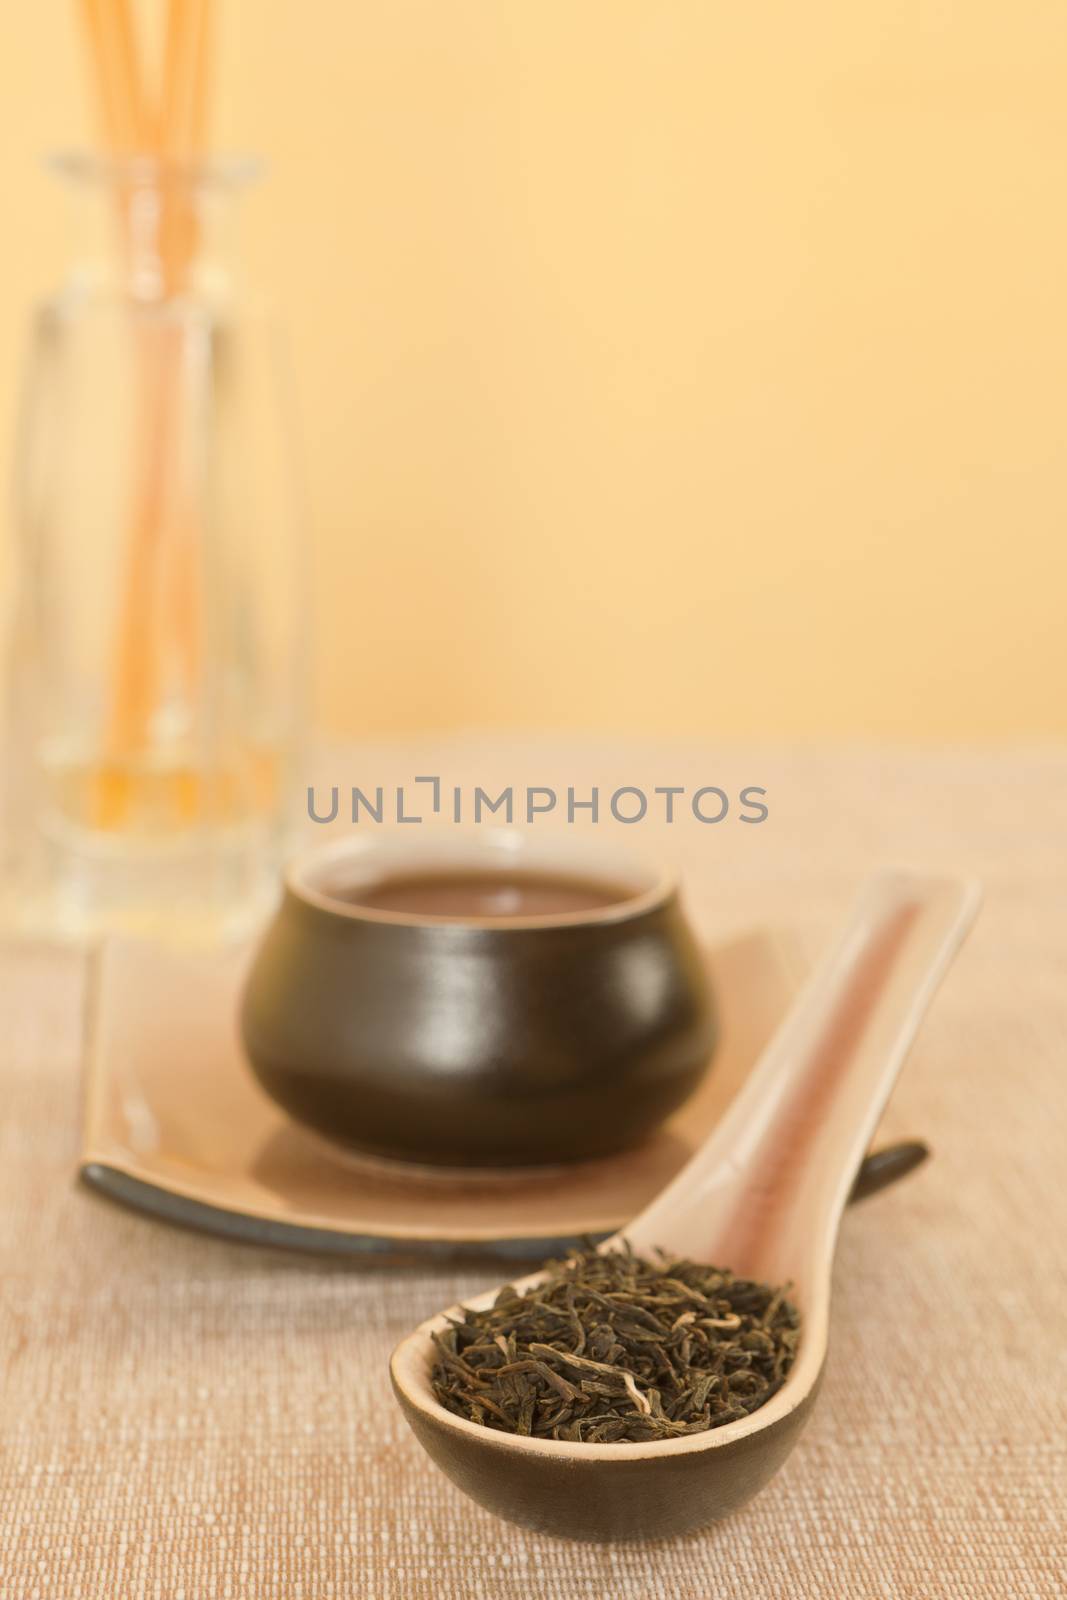 Black tea leaves on spoon, tea in tea bowl in background.